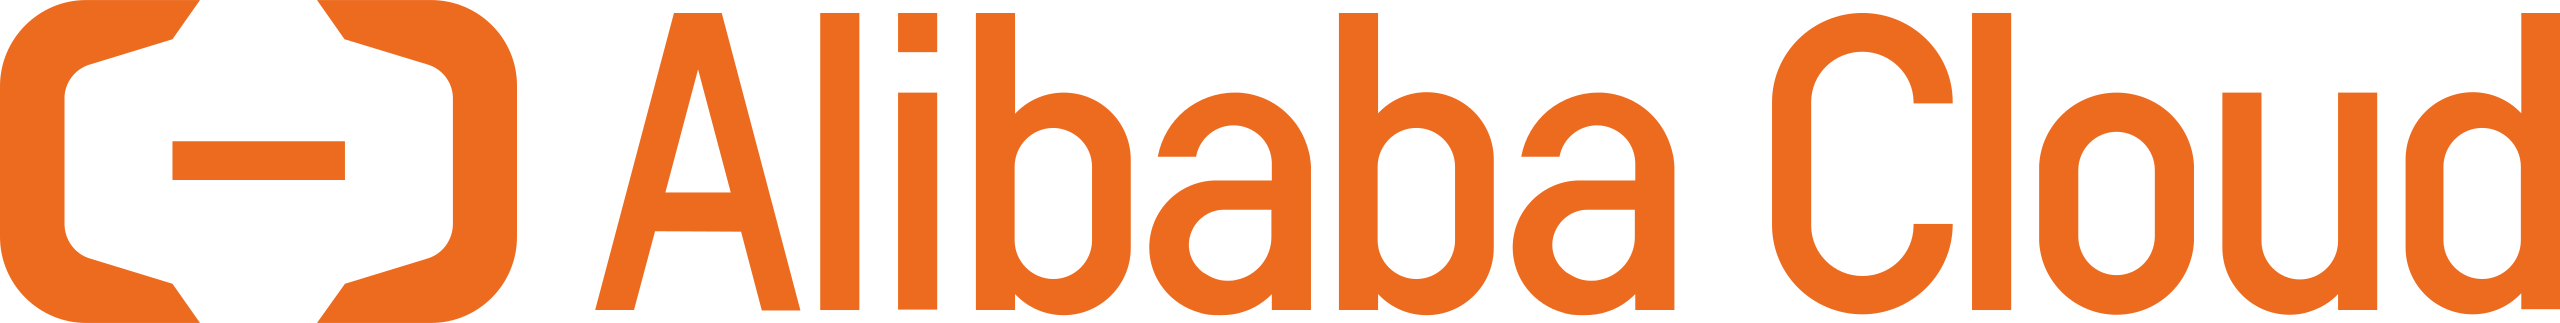 alibabacloud_logo